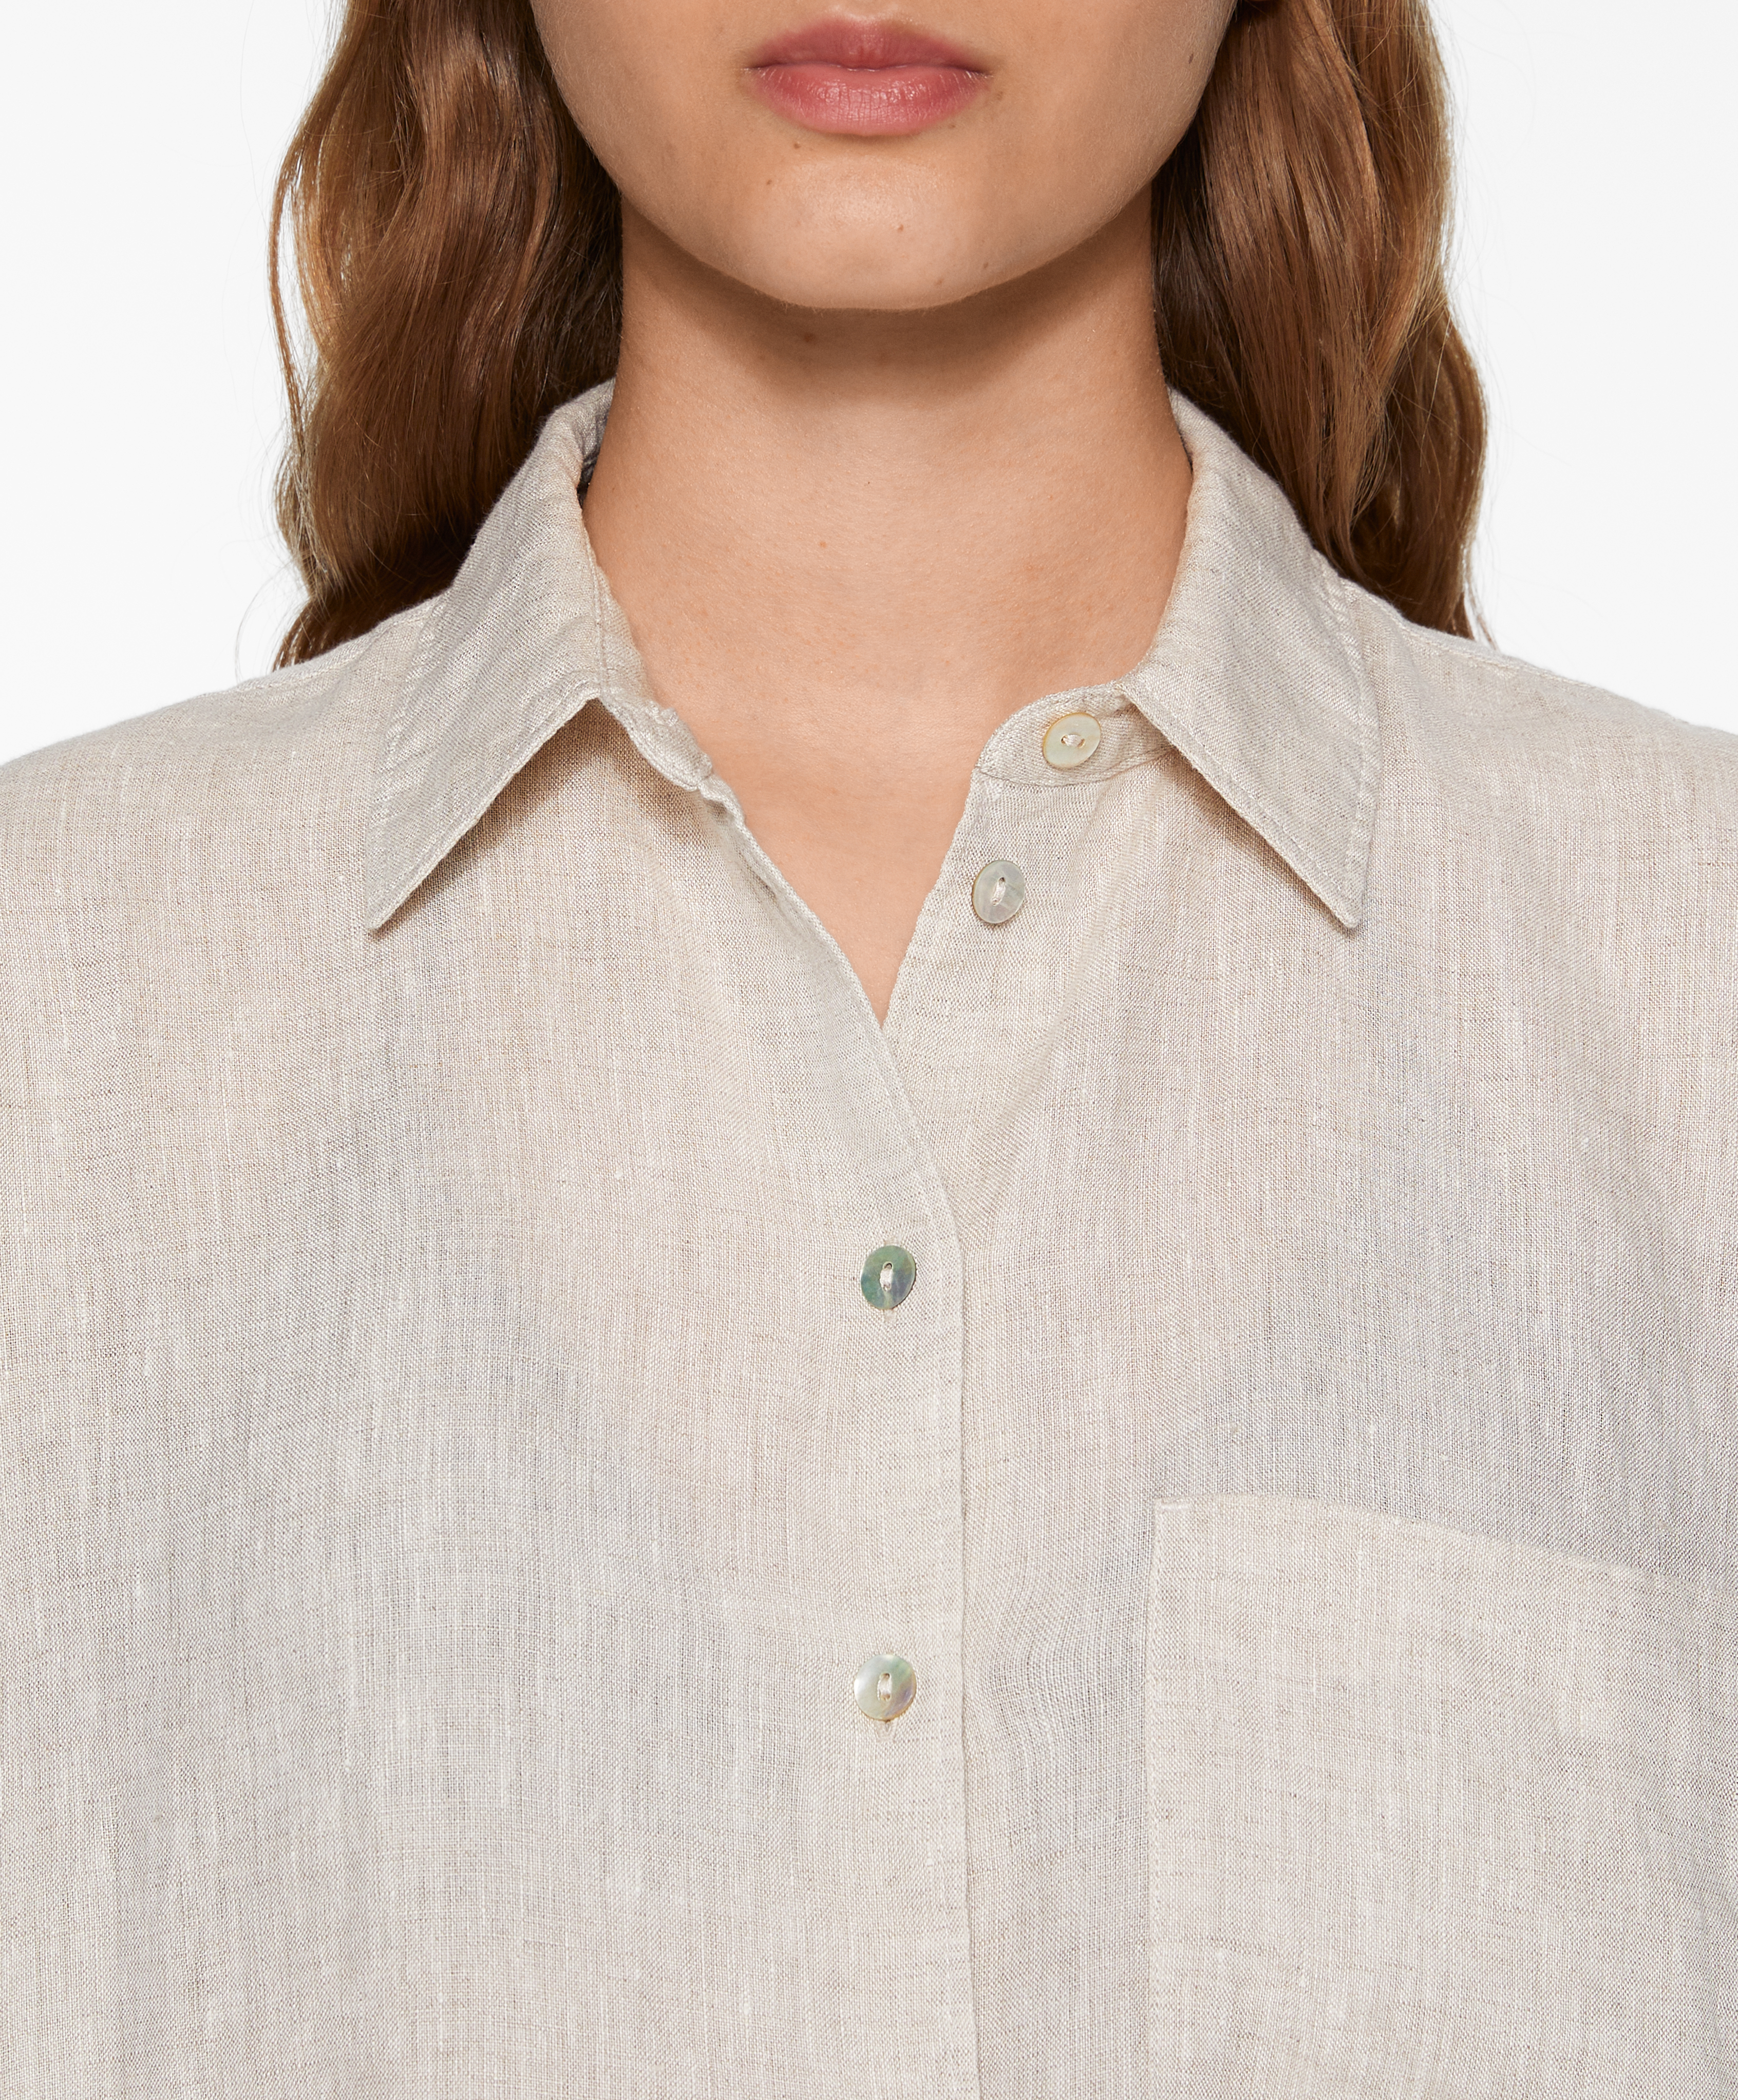 Camisa manga larga 100% lino